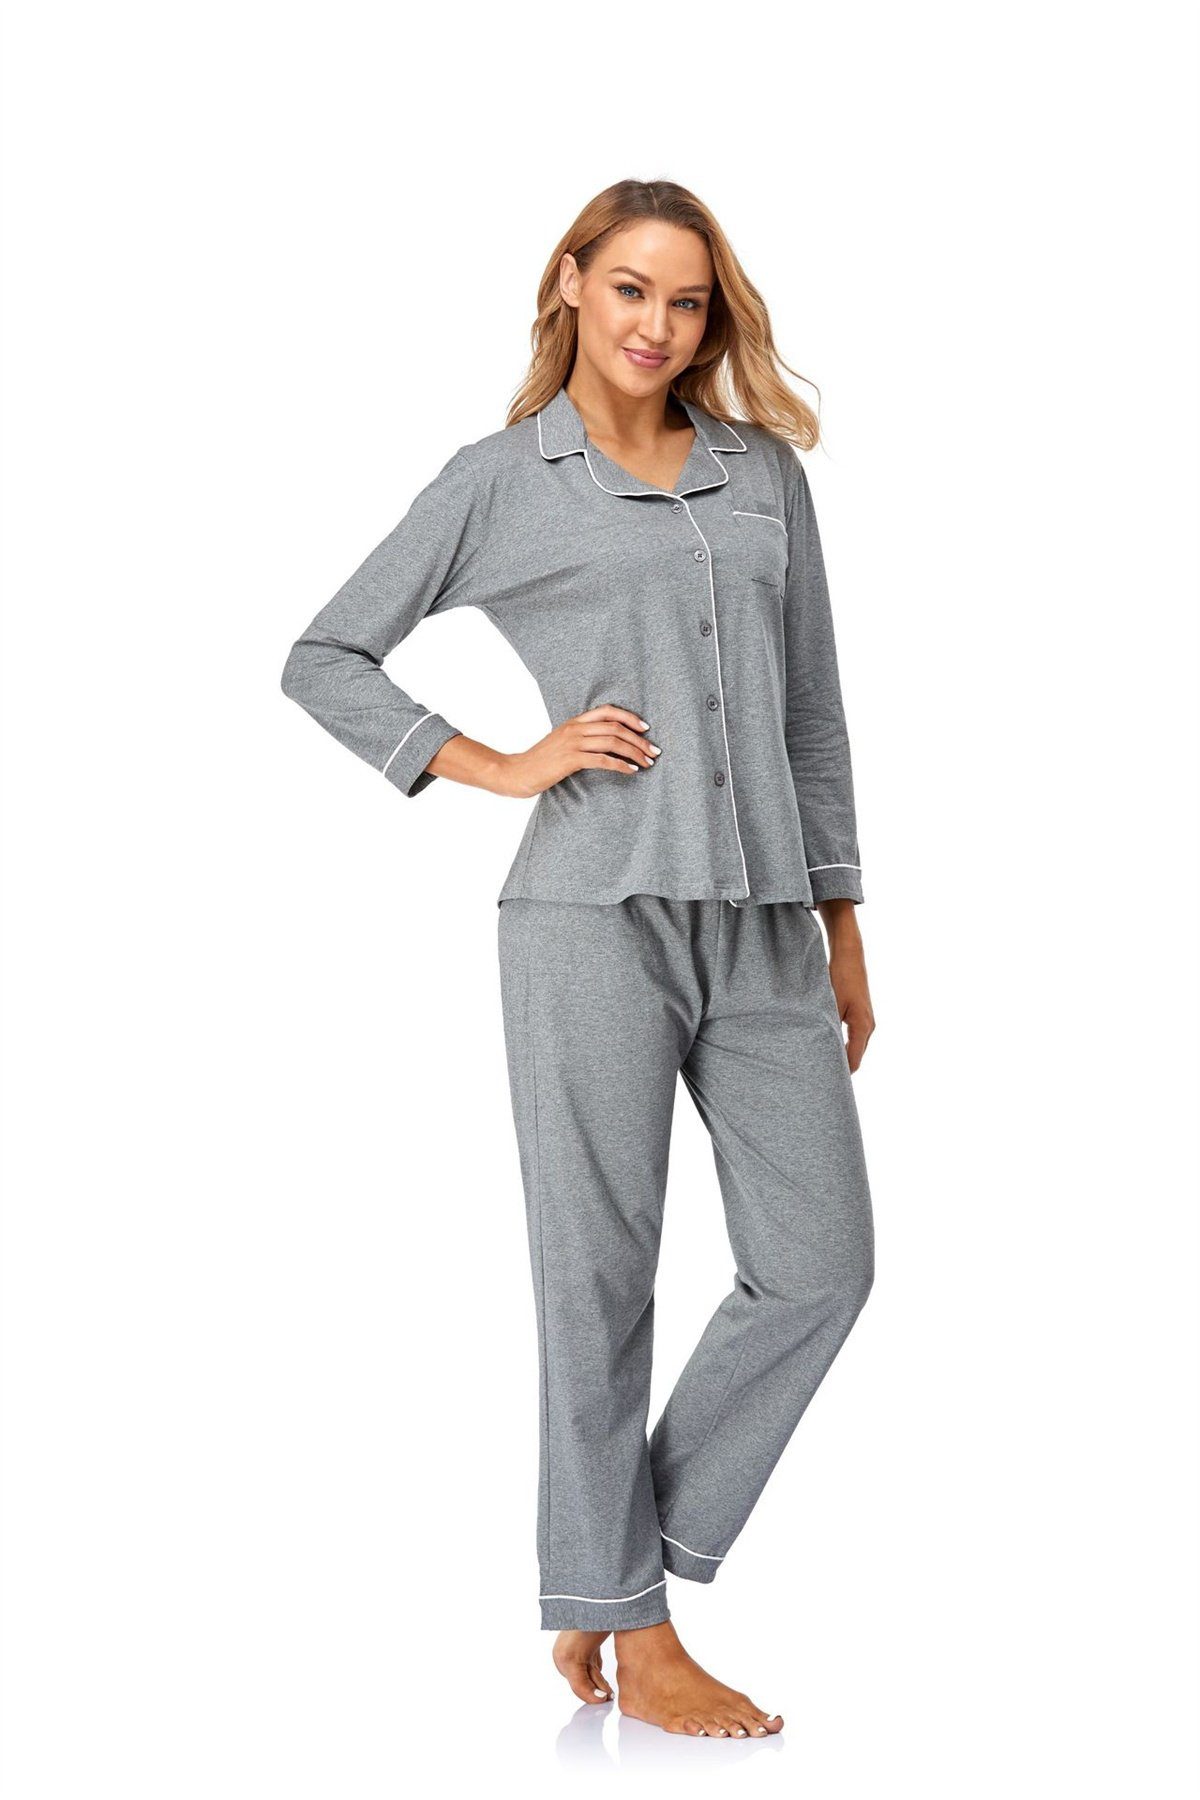 bequem Pyjama Damen, Einfaches Heimkleidungsset für selected carefully grau weich Pyjama-Set, und